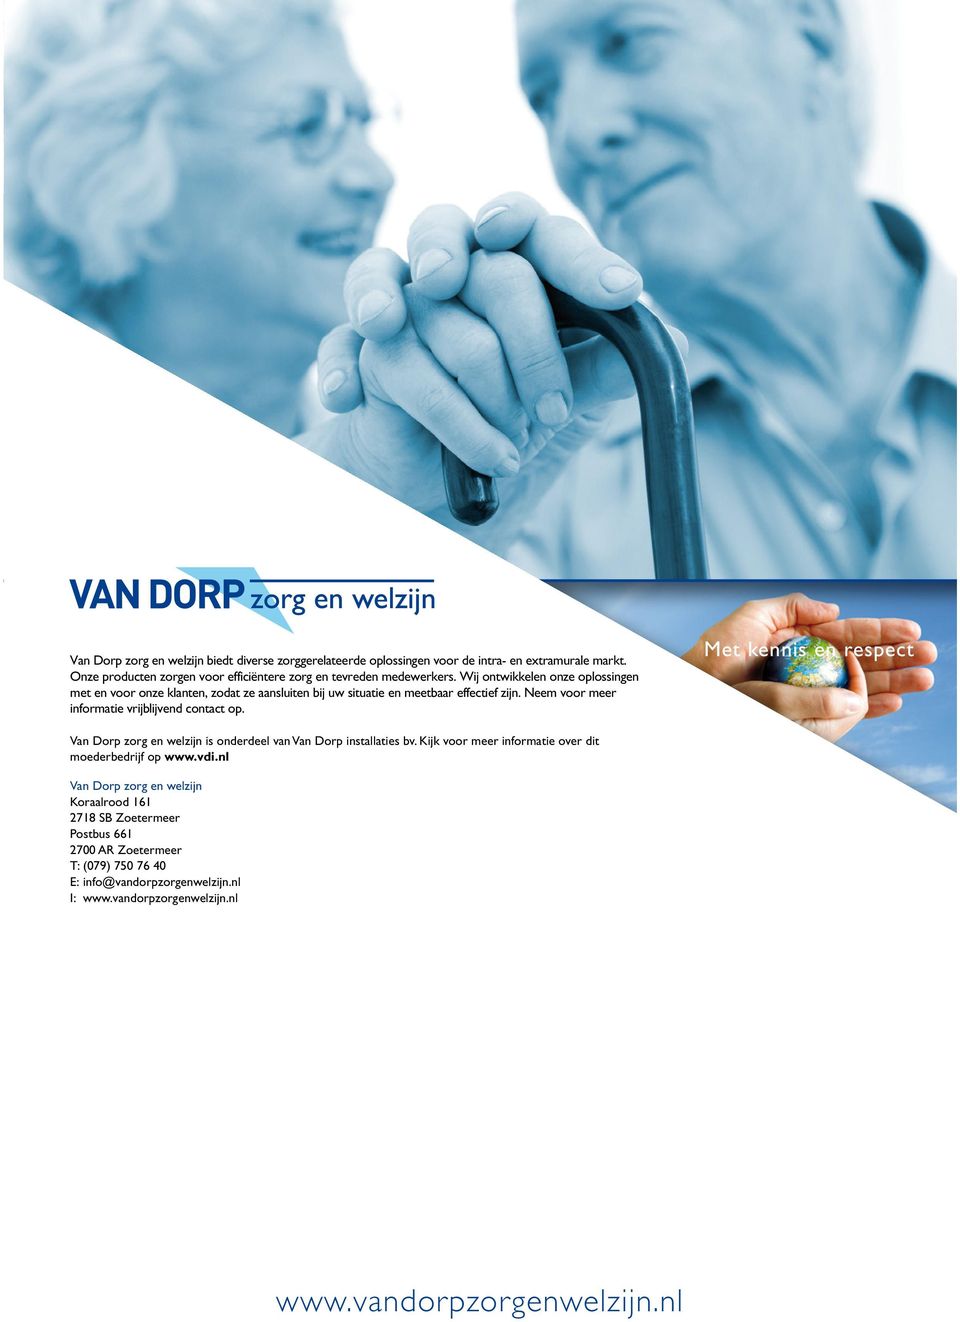 Van Dorp zorg en welzijn is onderdeel van Van Dorp installaties bv. Kijk voor meer informatie over dit moederbedrijf op www.vdi.